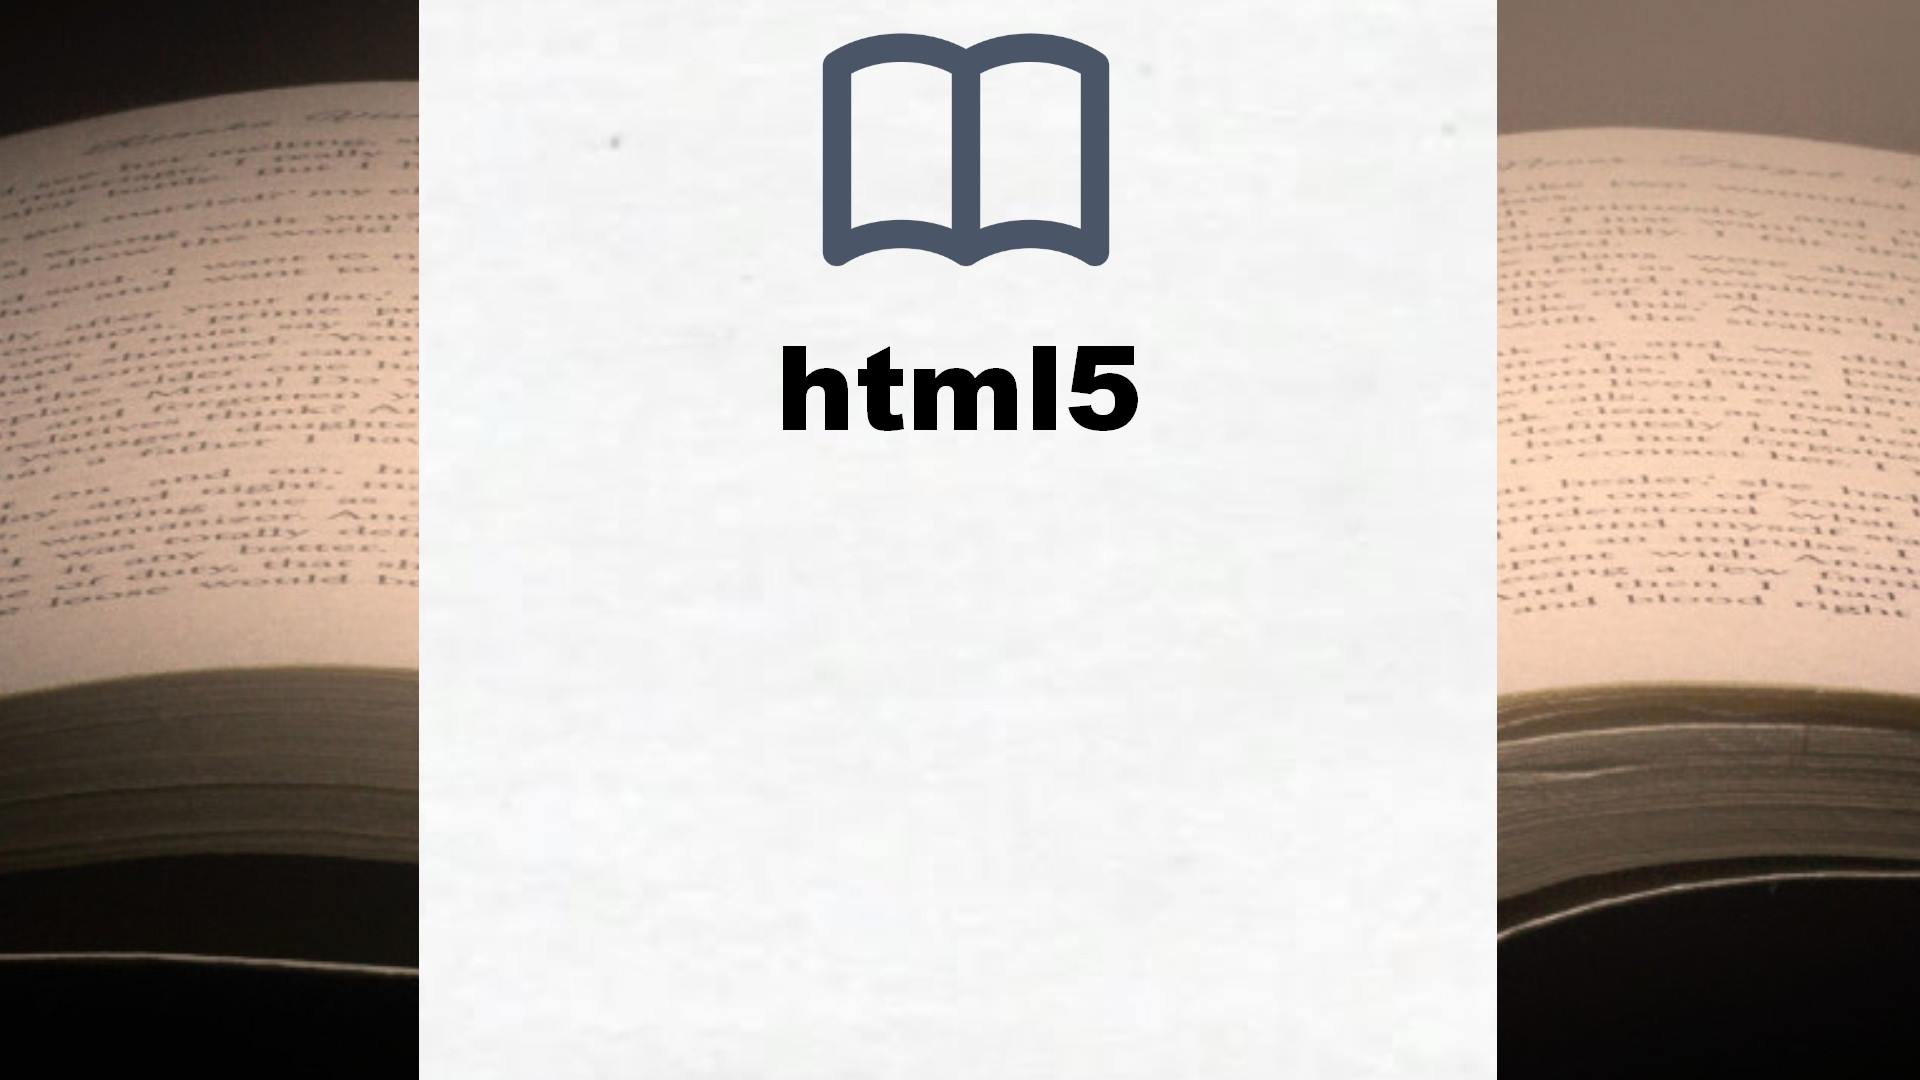 Libros sobre html5